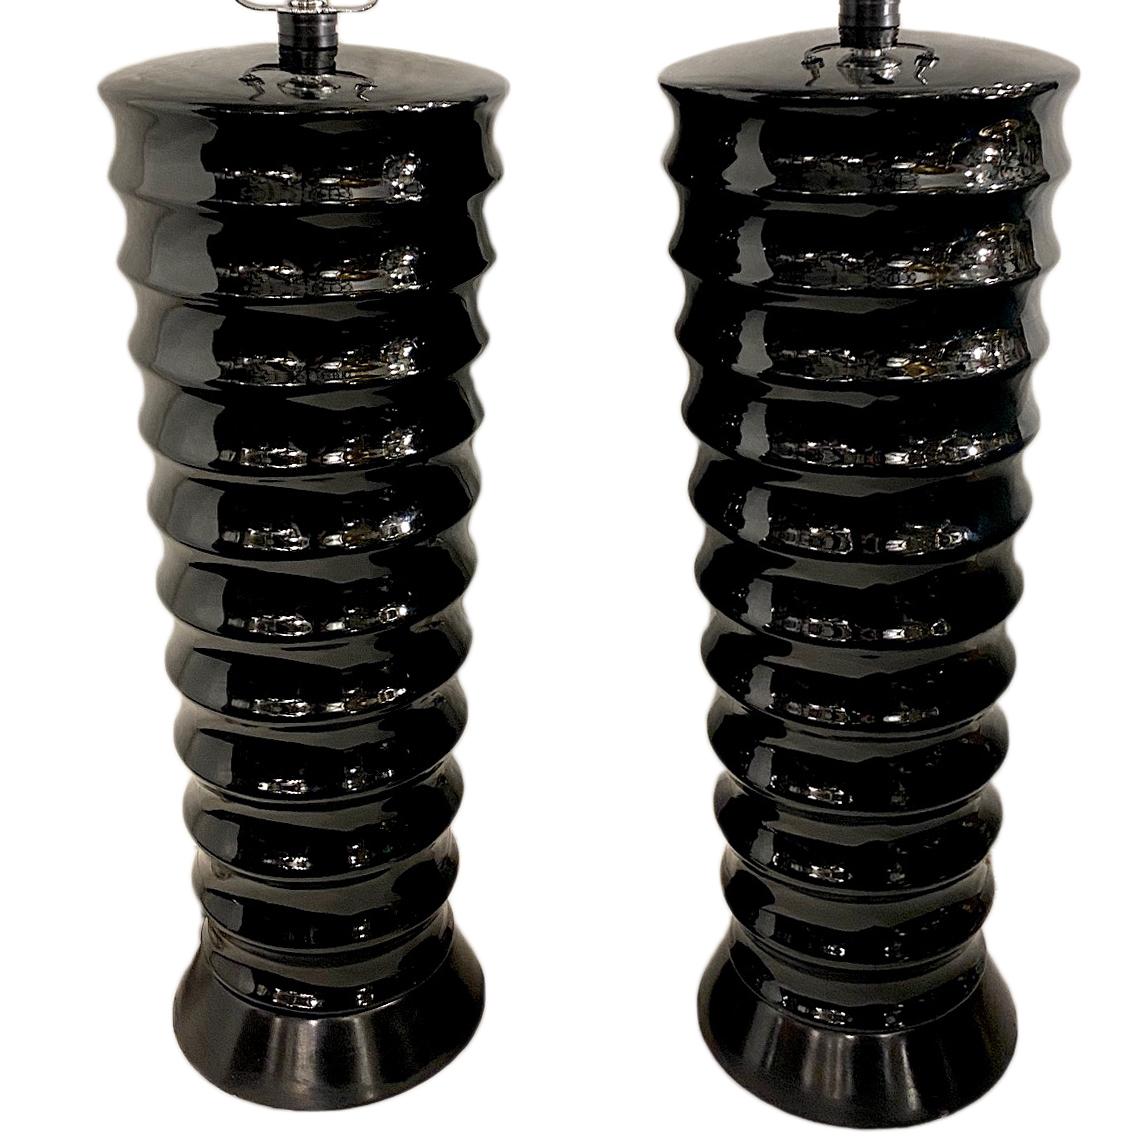 Une paire de lampes de table françaises en porcelaine noire à colonne effilée datant des années 1950.

Mesures :
Hauteur du corps : 21 ?
Diamètre : 7,5 cm.